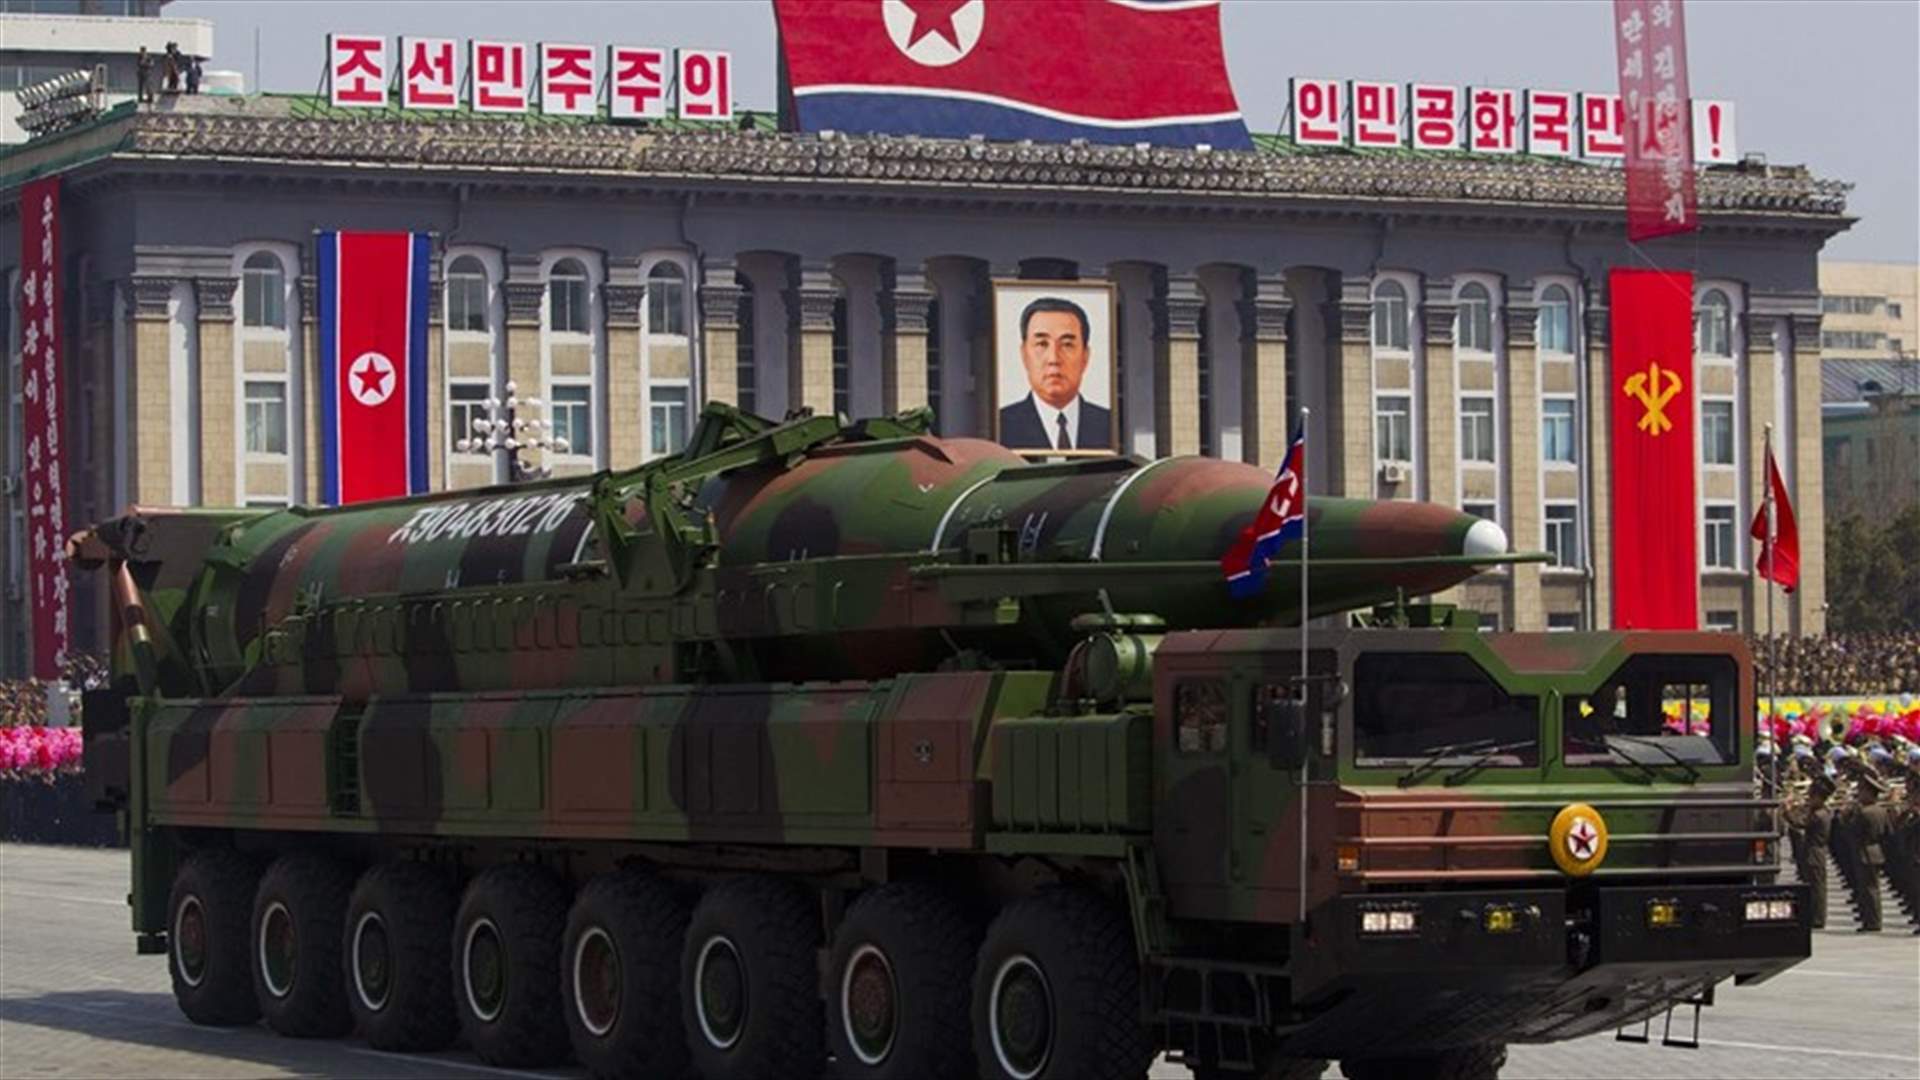 شاحنات وقود عند موقع لاطلاق صواريخ في كوريا الشمالية